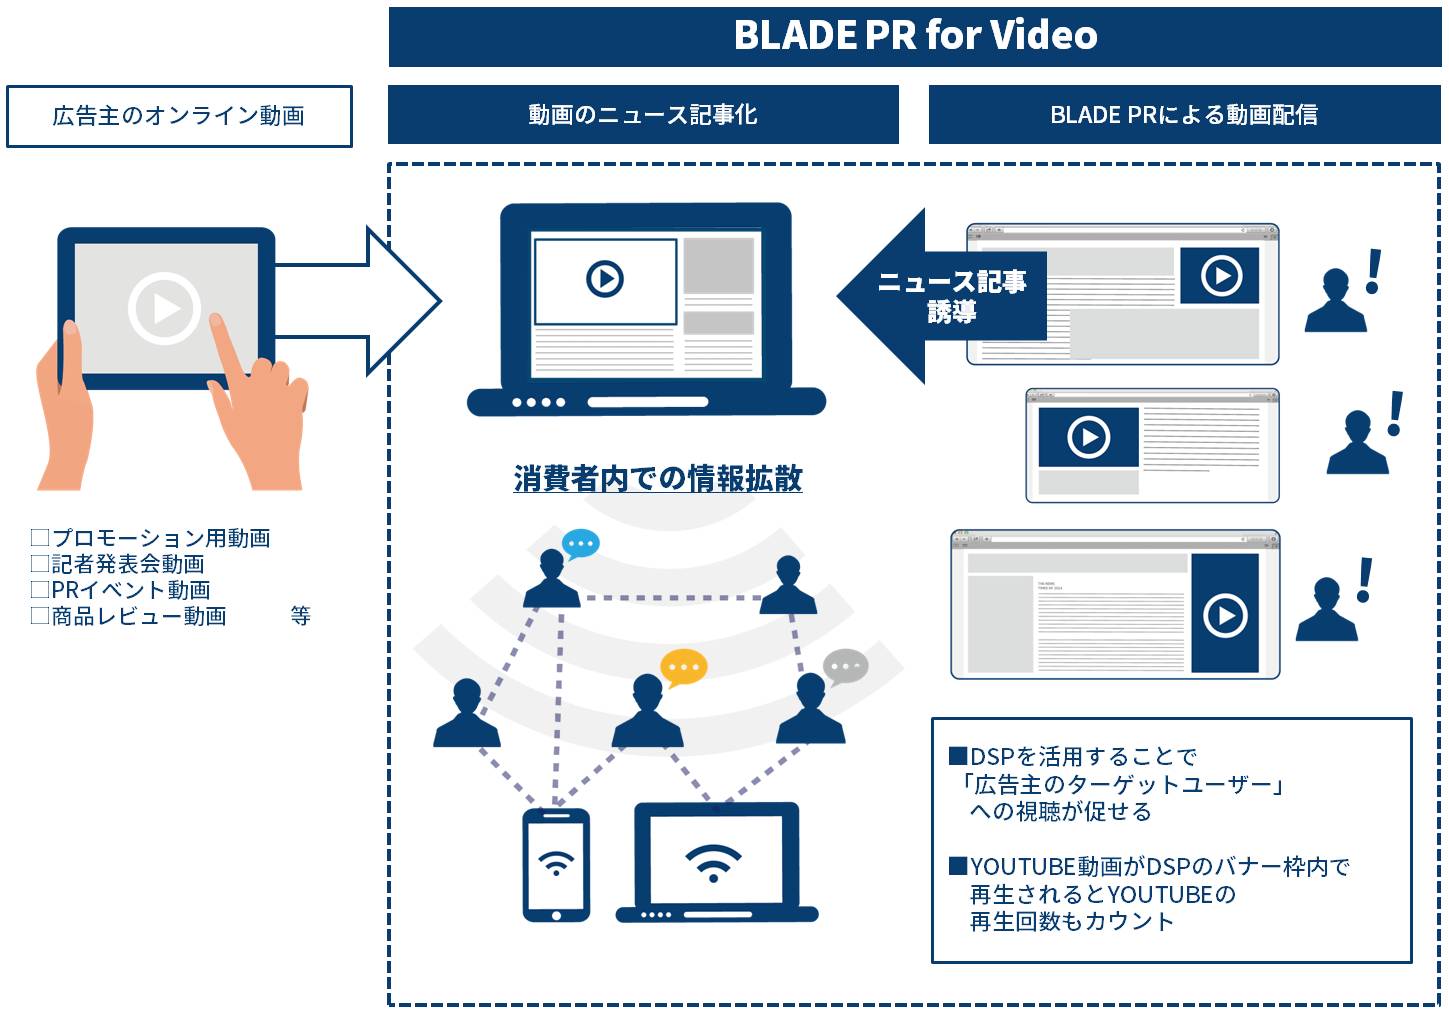 総合PR会社ベクトルの子会社ニューステクノロジーが オンライン動画の視聴・拡散を促進するサービス 「BLADE PR